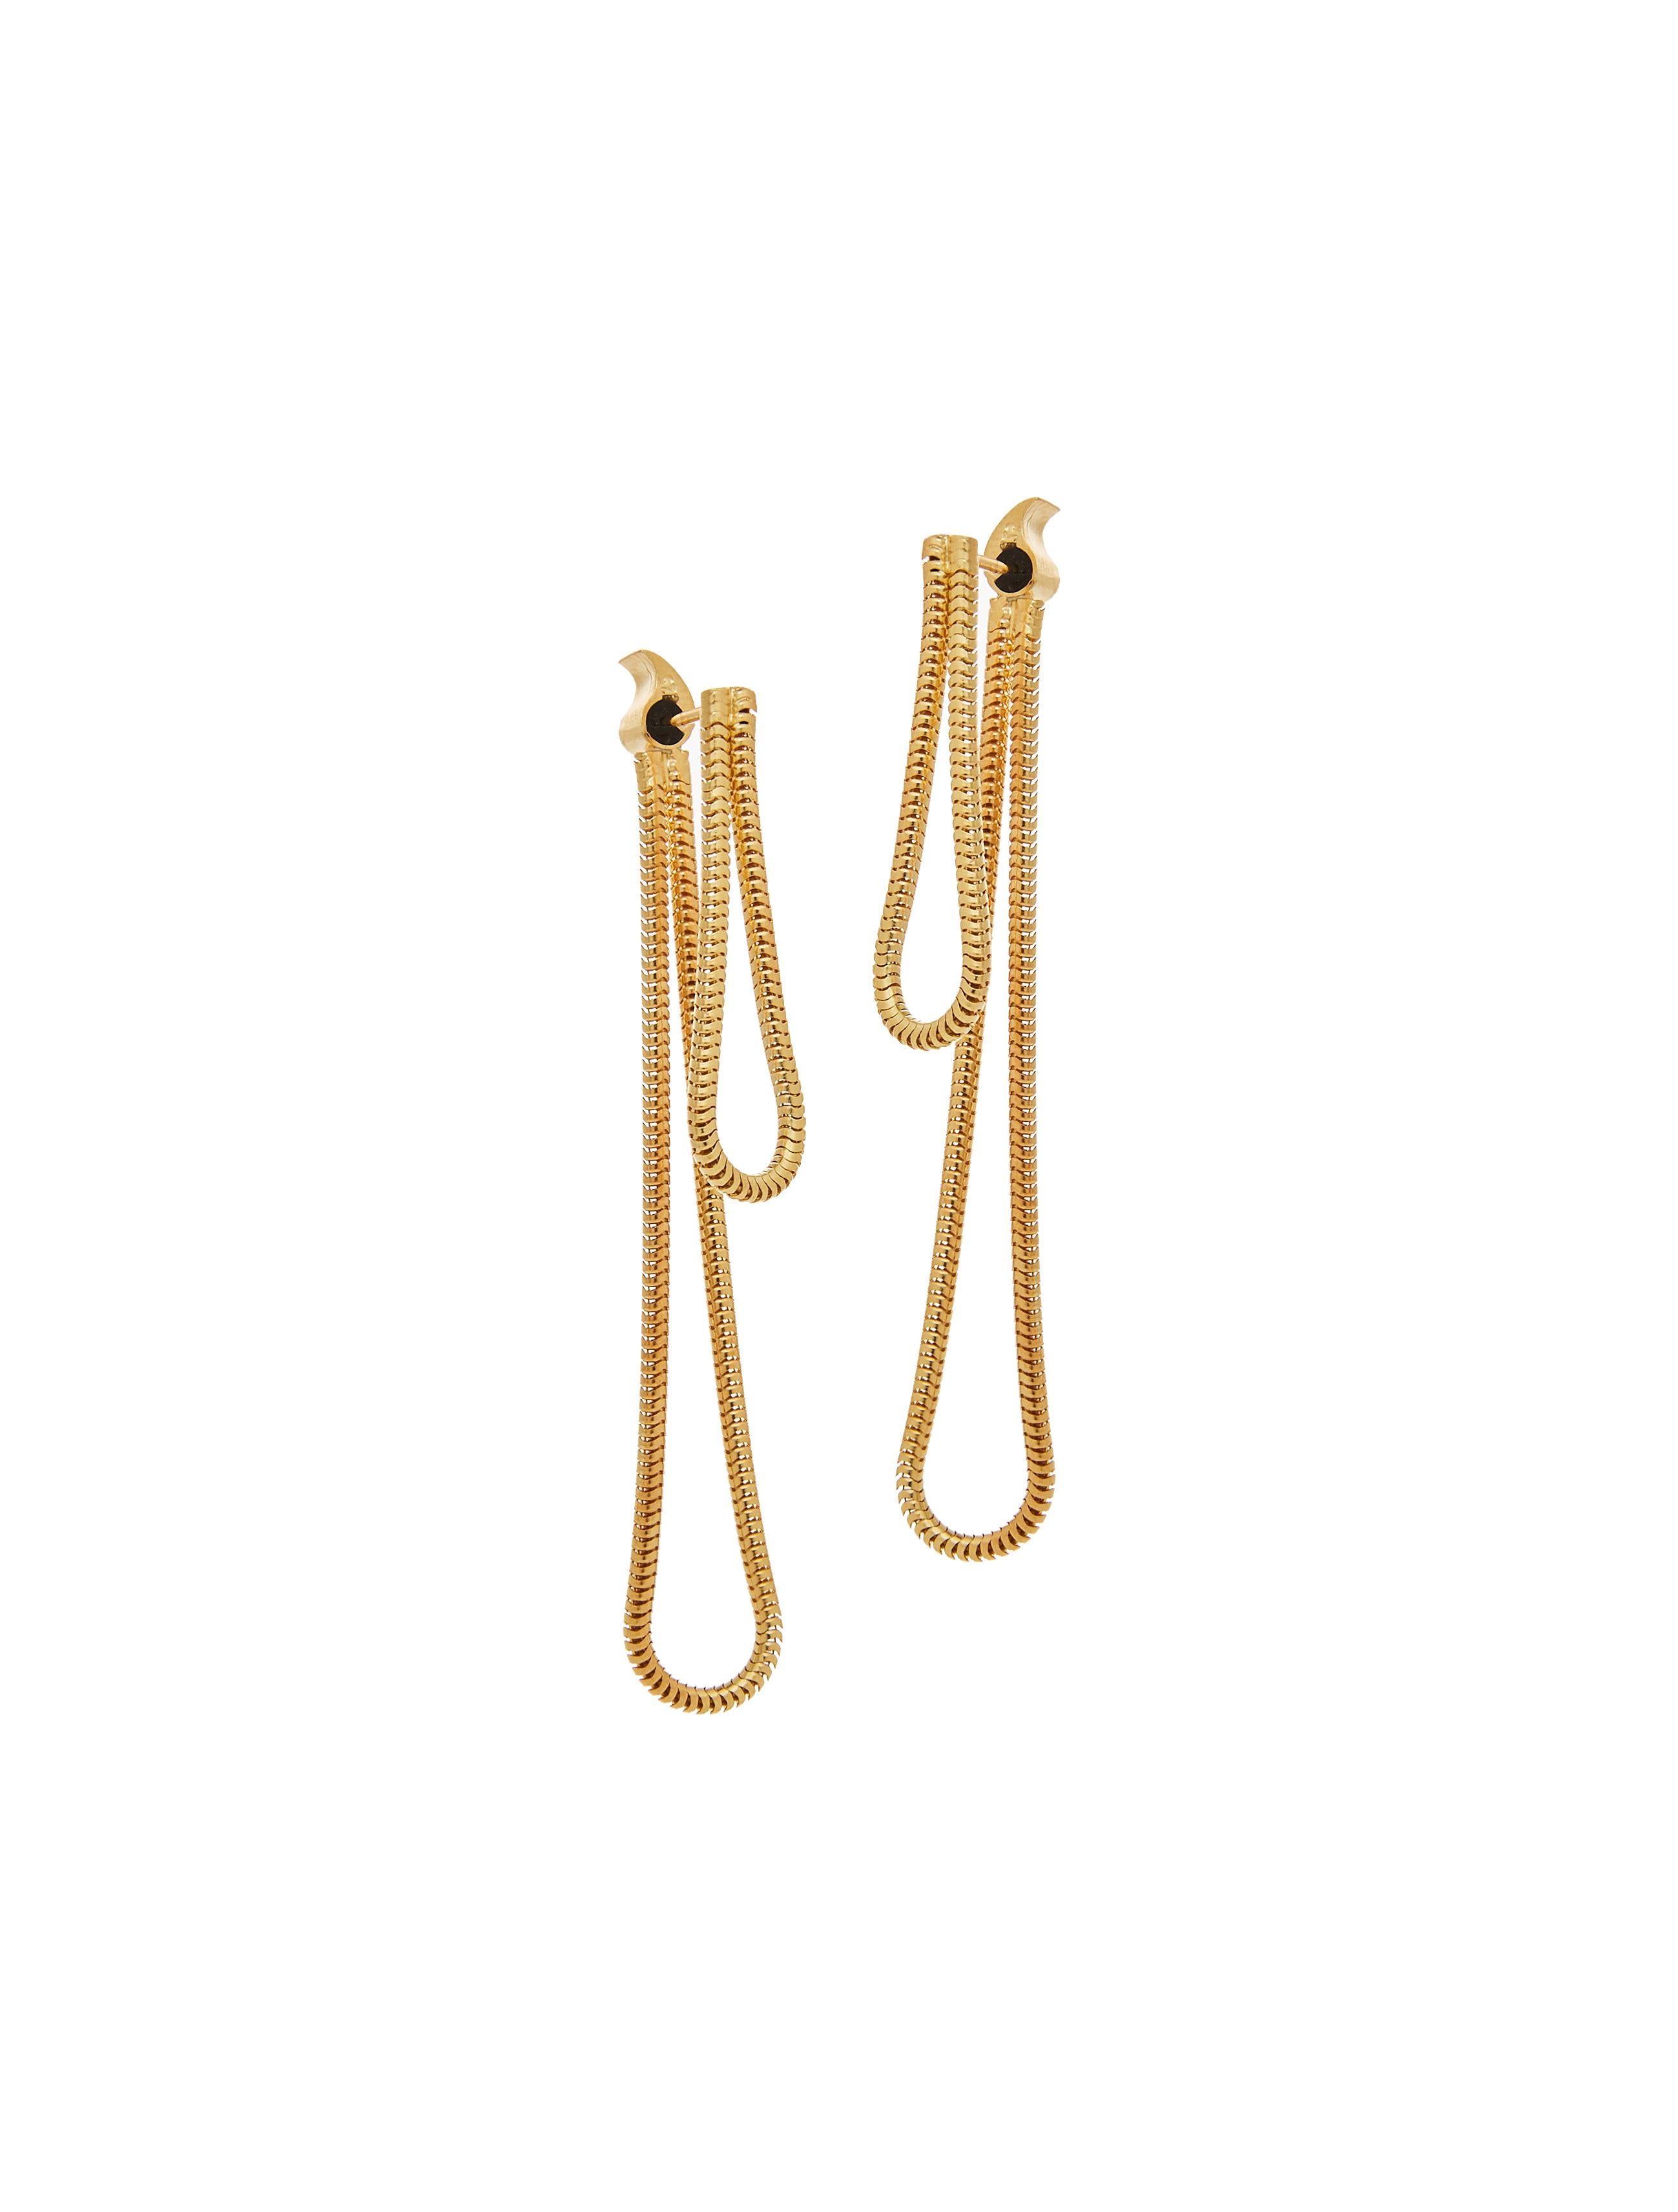 Women's Melodia Earrings 18 Karat Gold-Plated Sterling Silver Snake Chain Greek Jewelry For Sale